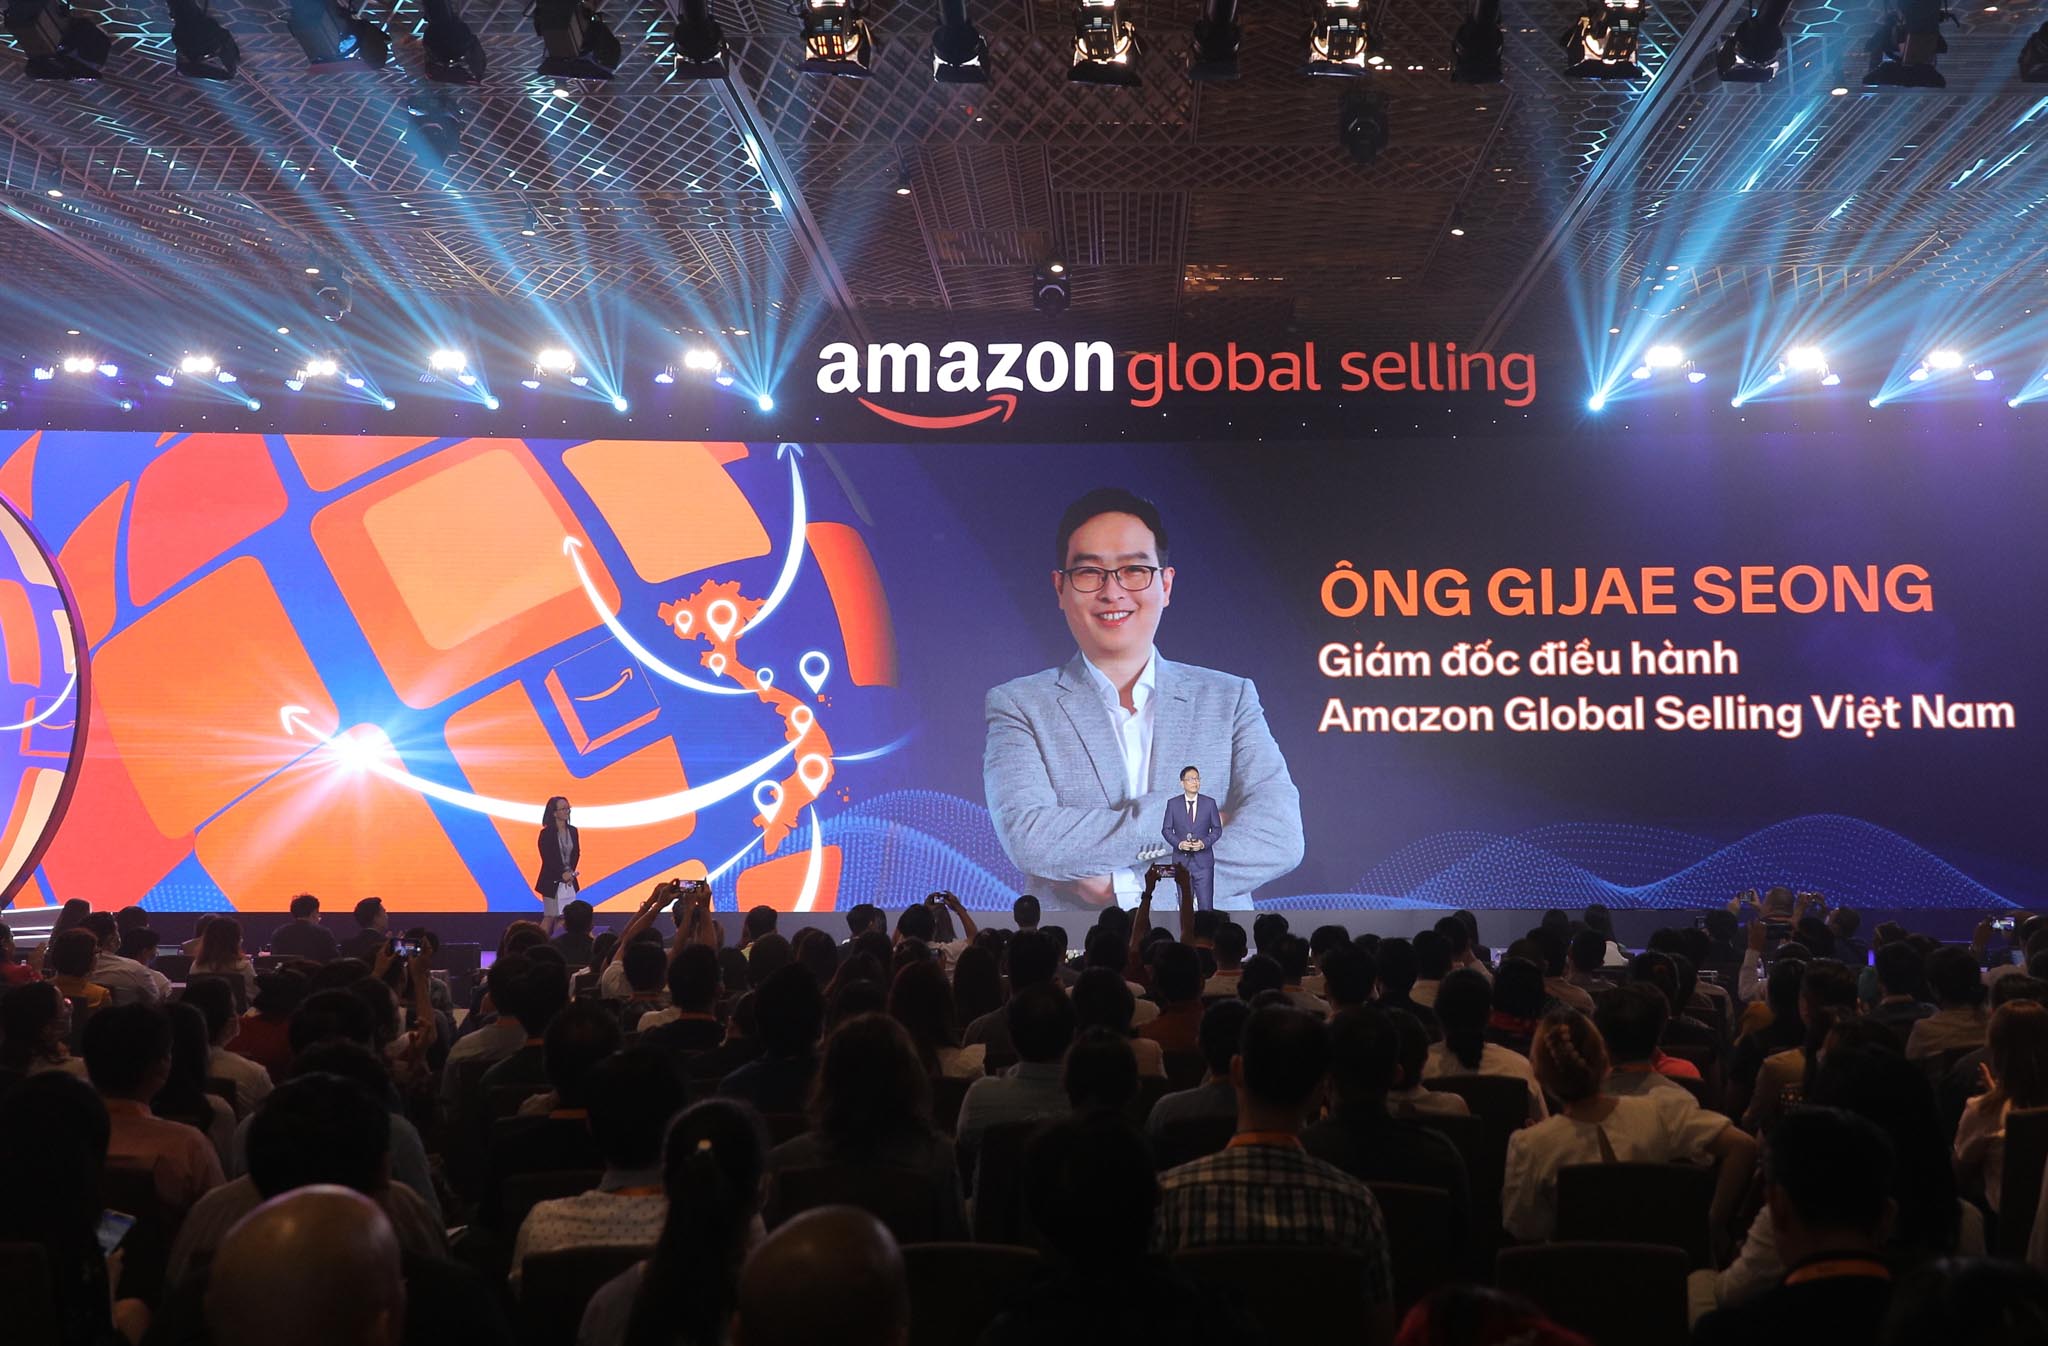 “Amazon Week 2022: Hội nghị Thương mại điện tử xuyên biên giới” khai mạc tại TP.HCM